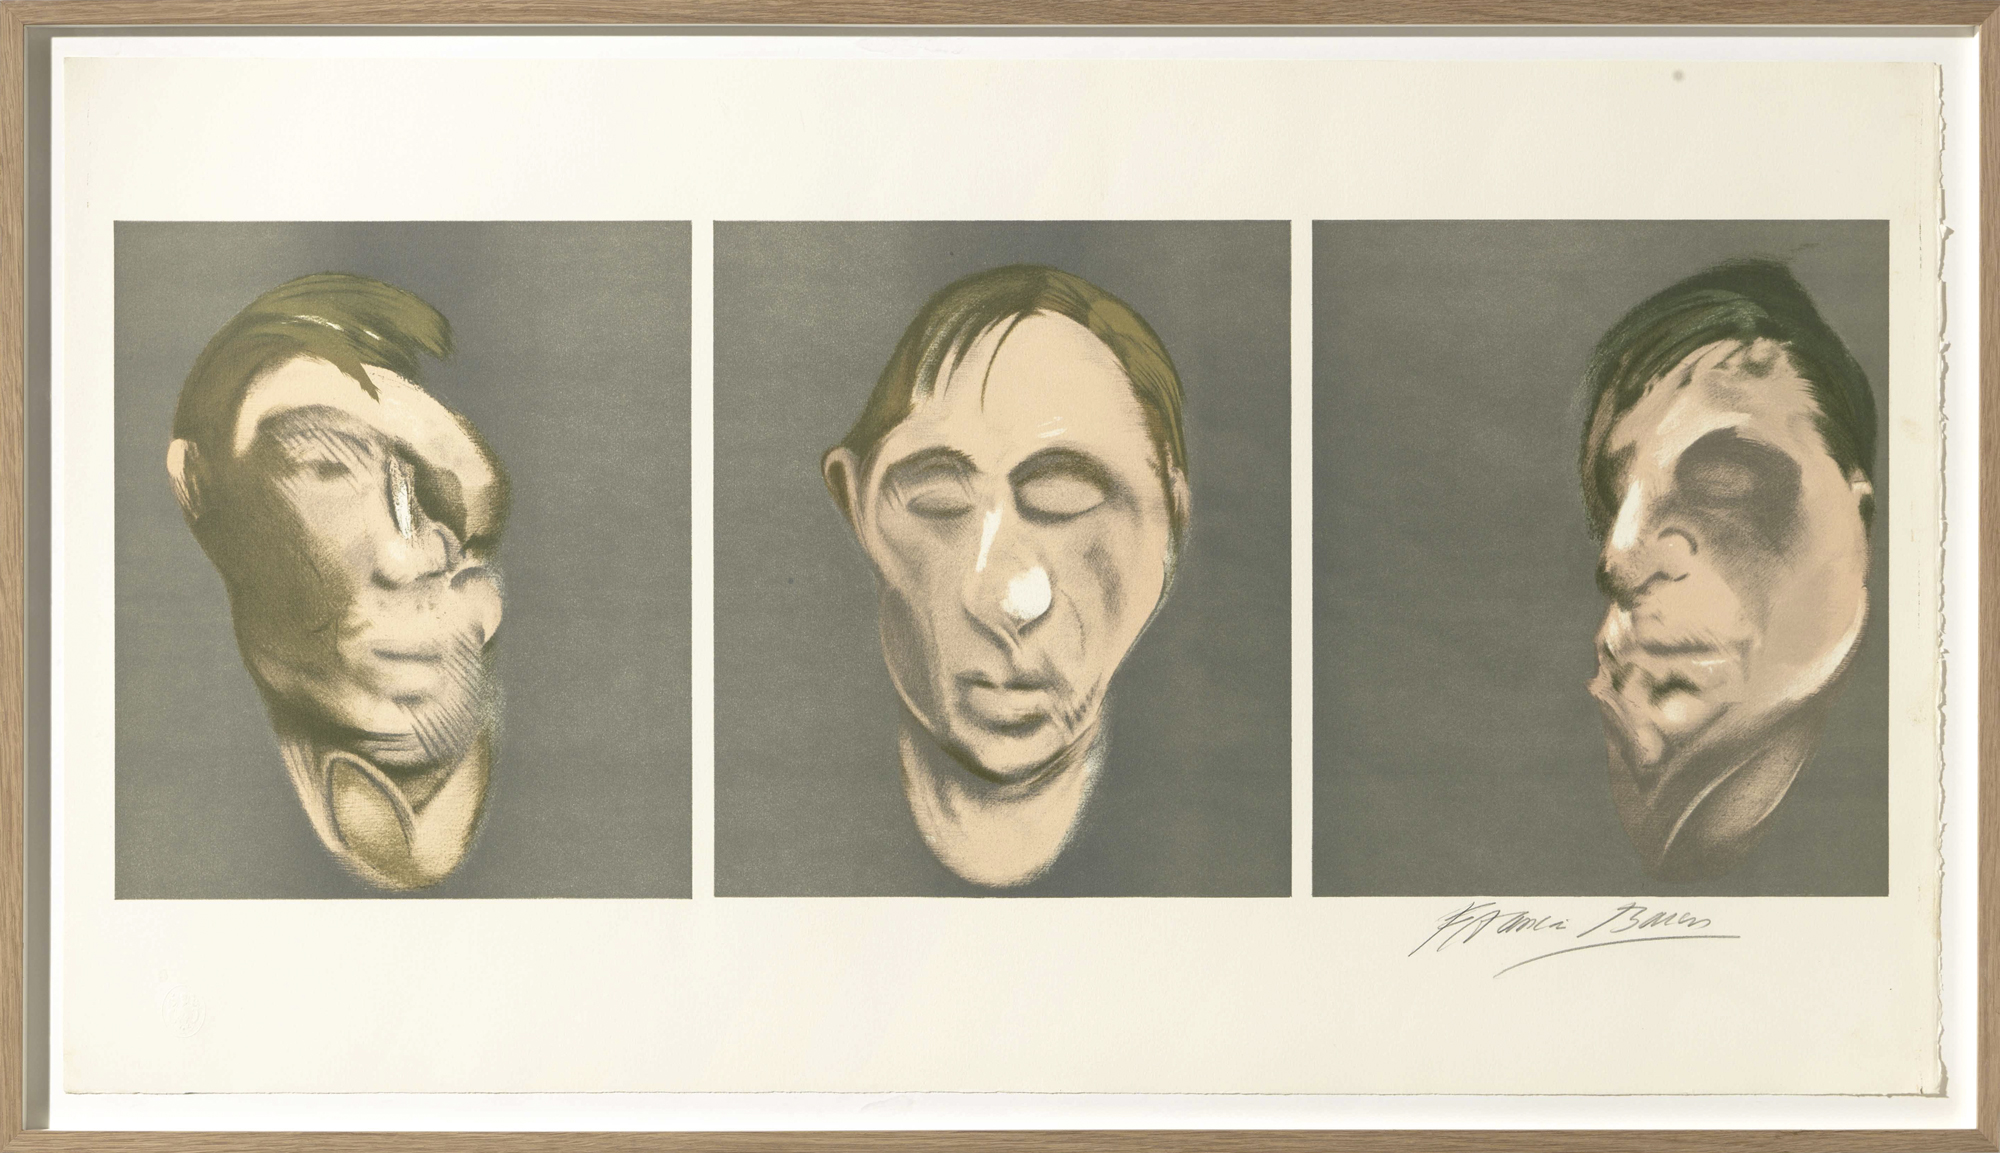 Bild "Studies for a Self-Portrait" (1983) von Francis Bacon